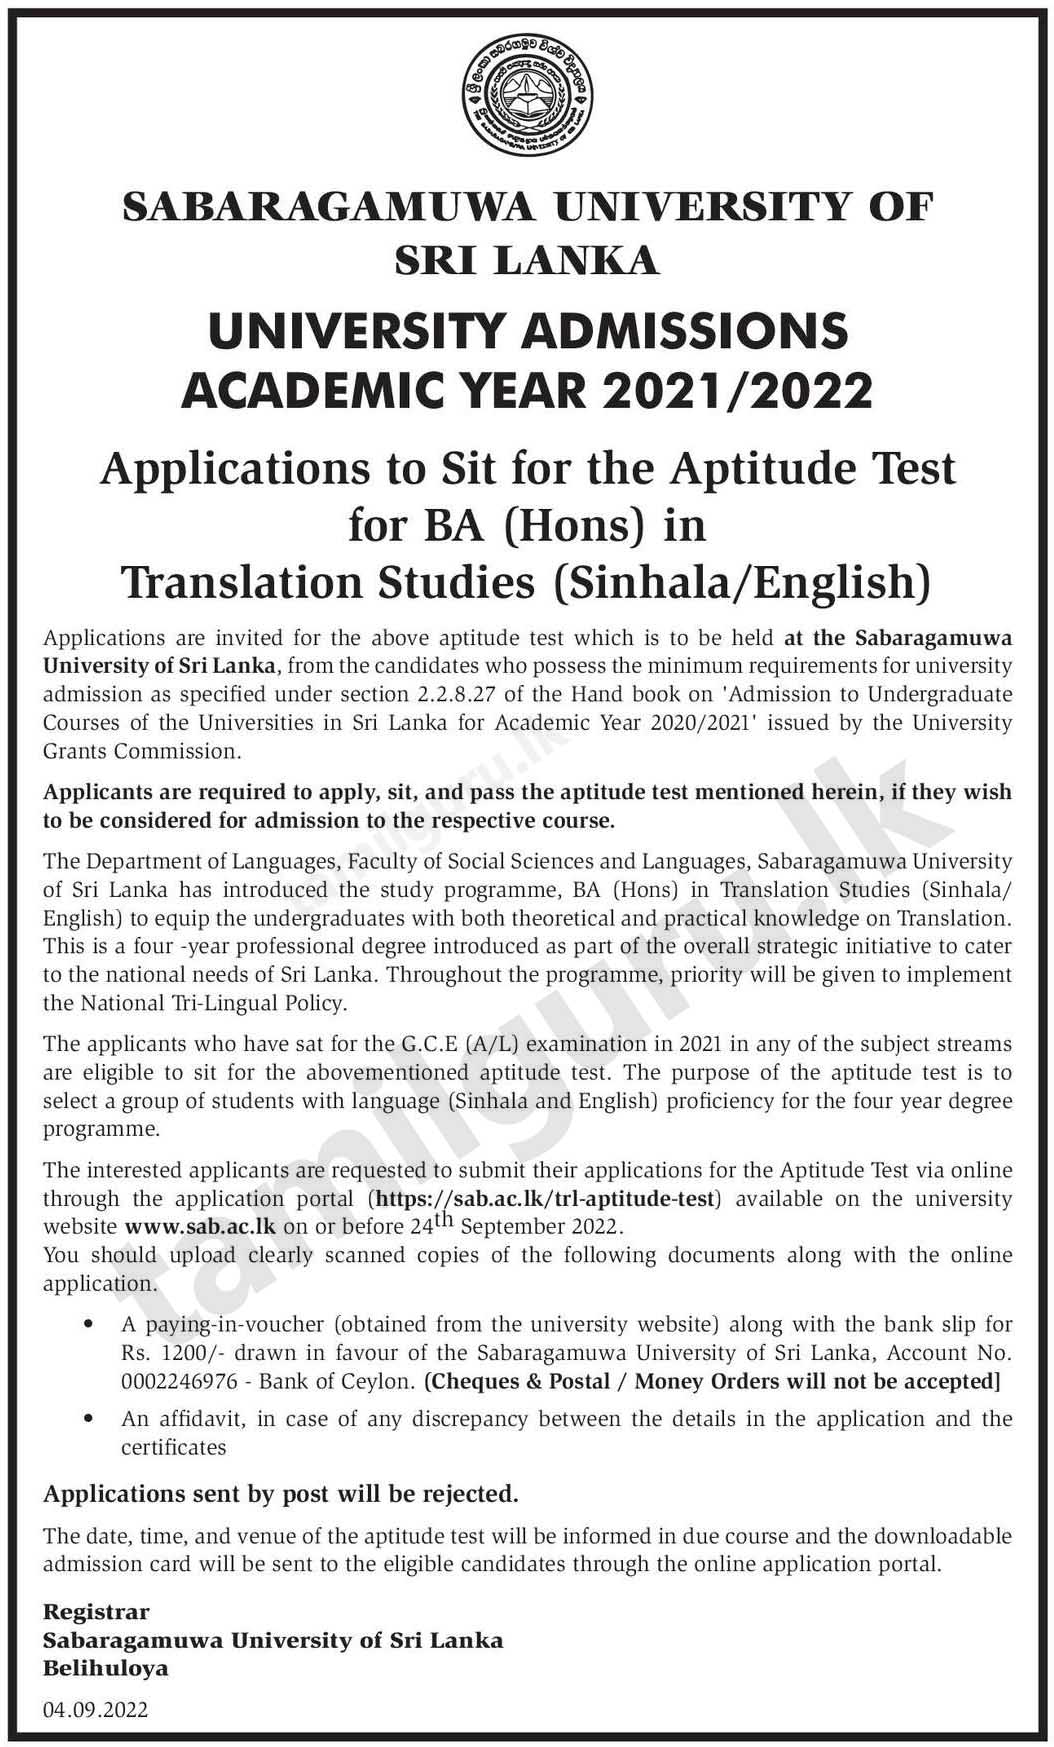 Sabaragamuwa University Translation Studies Aptitude Test 2022